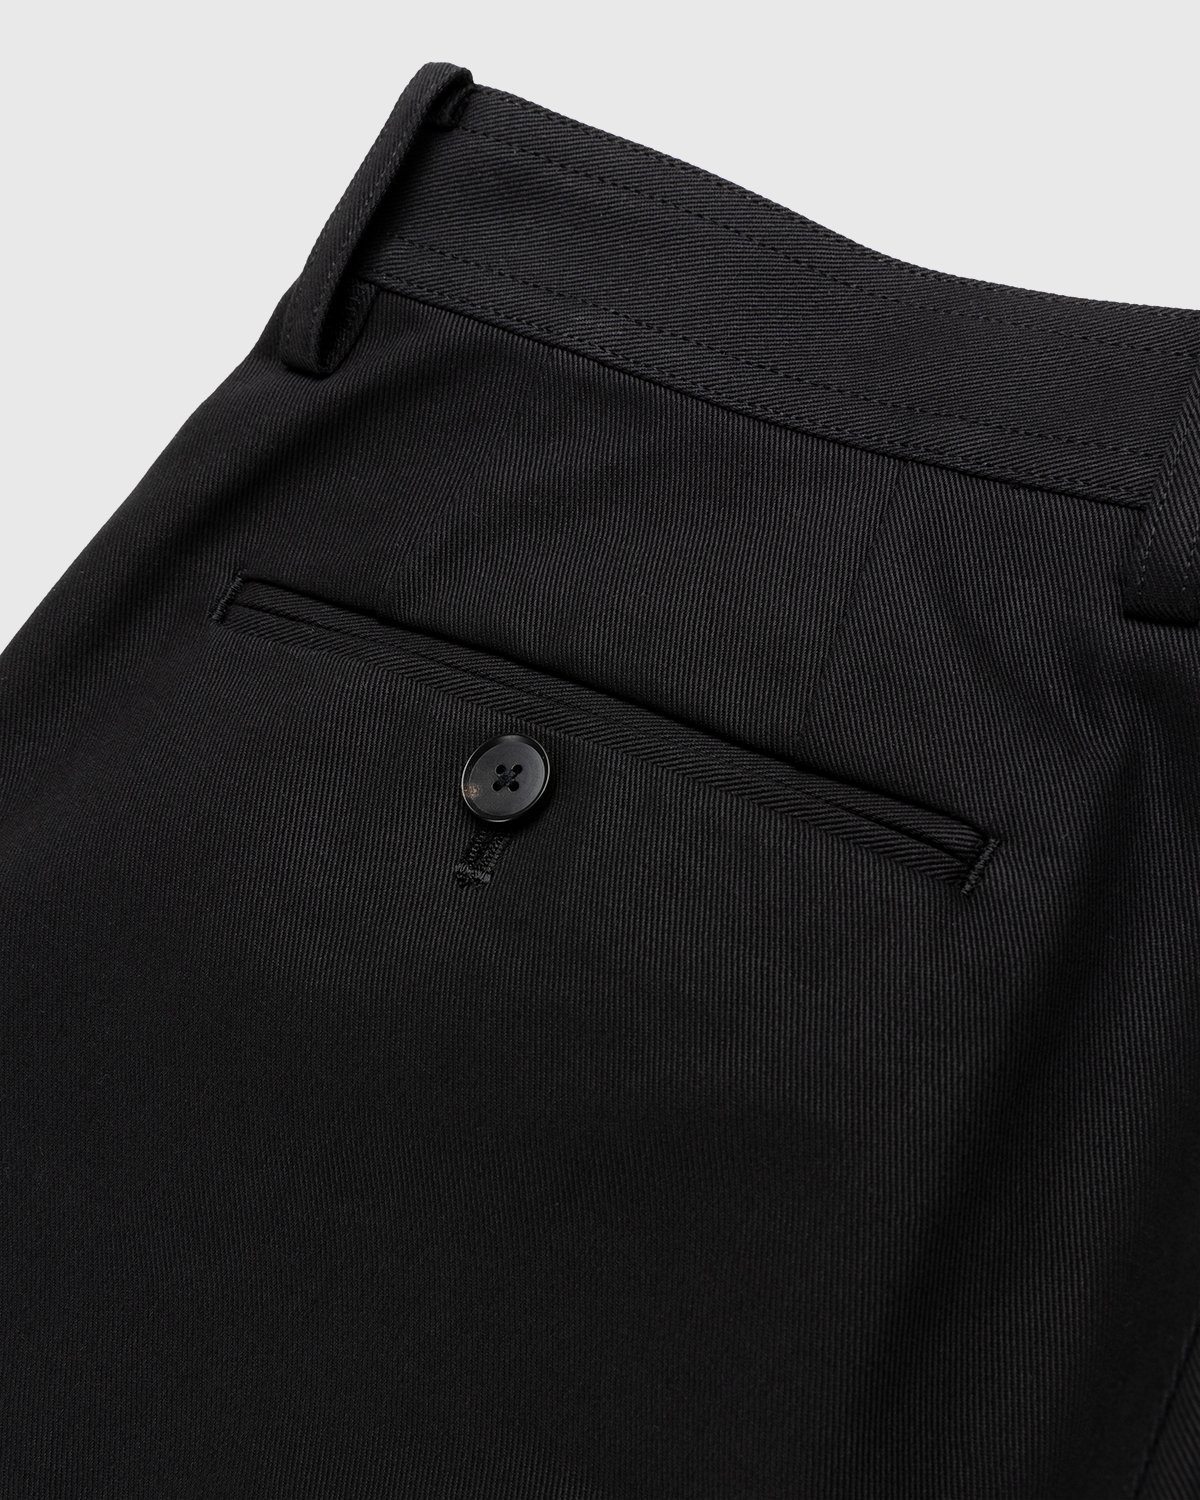 Auralee – Cotton Woven Pants Black - Trousers - Black - Image 4